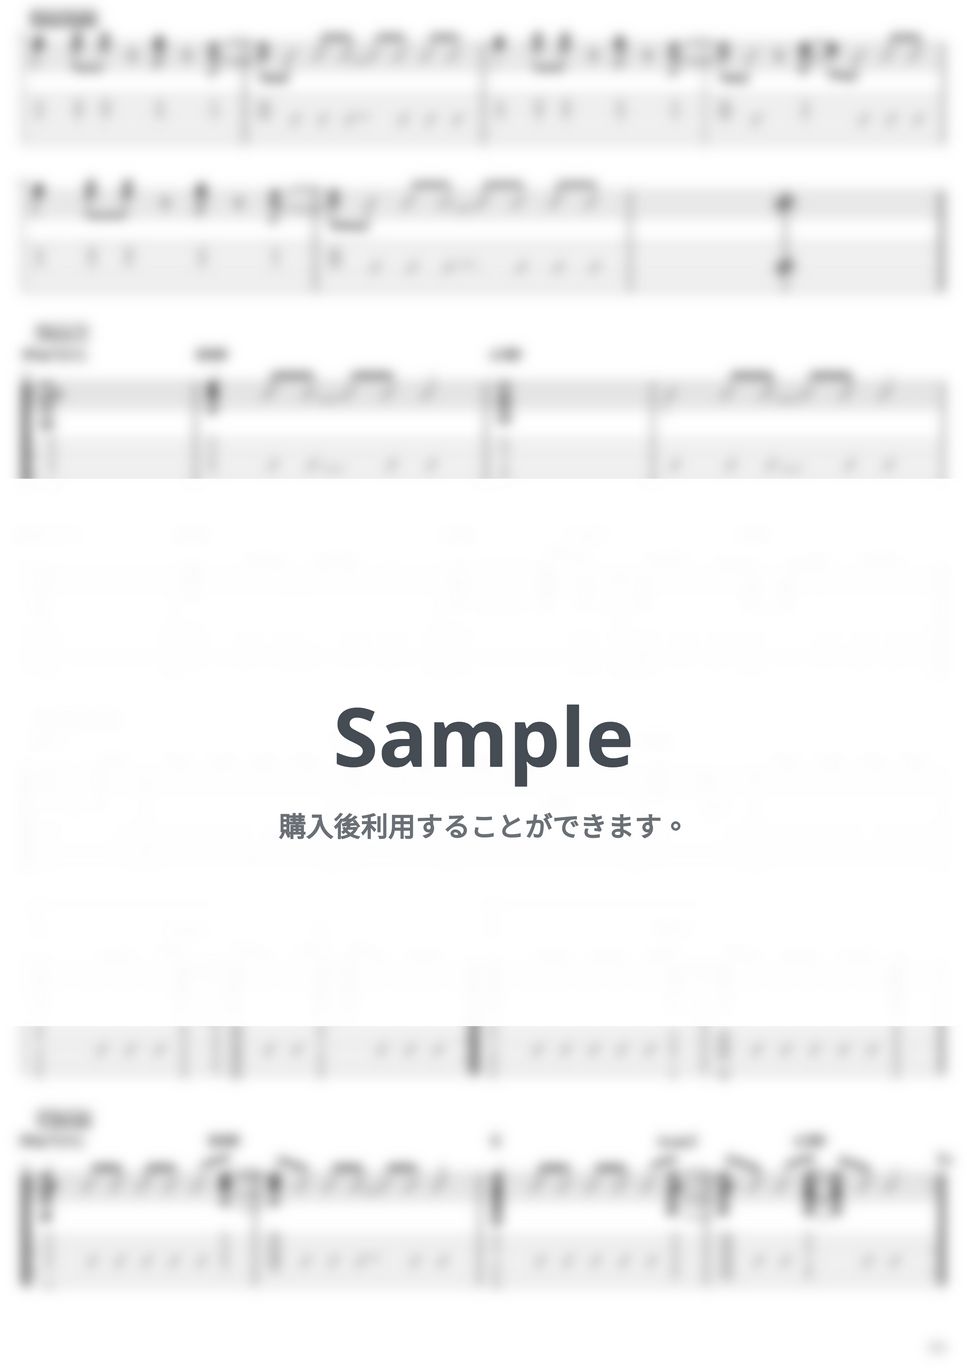 じん - サマータイムレコード by Kazuki